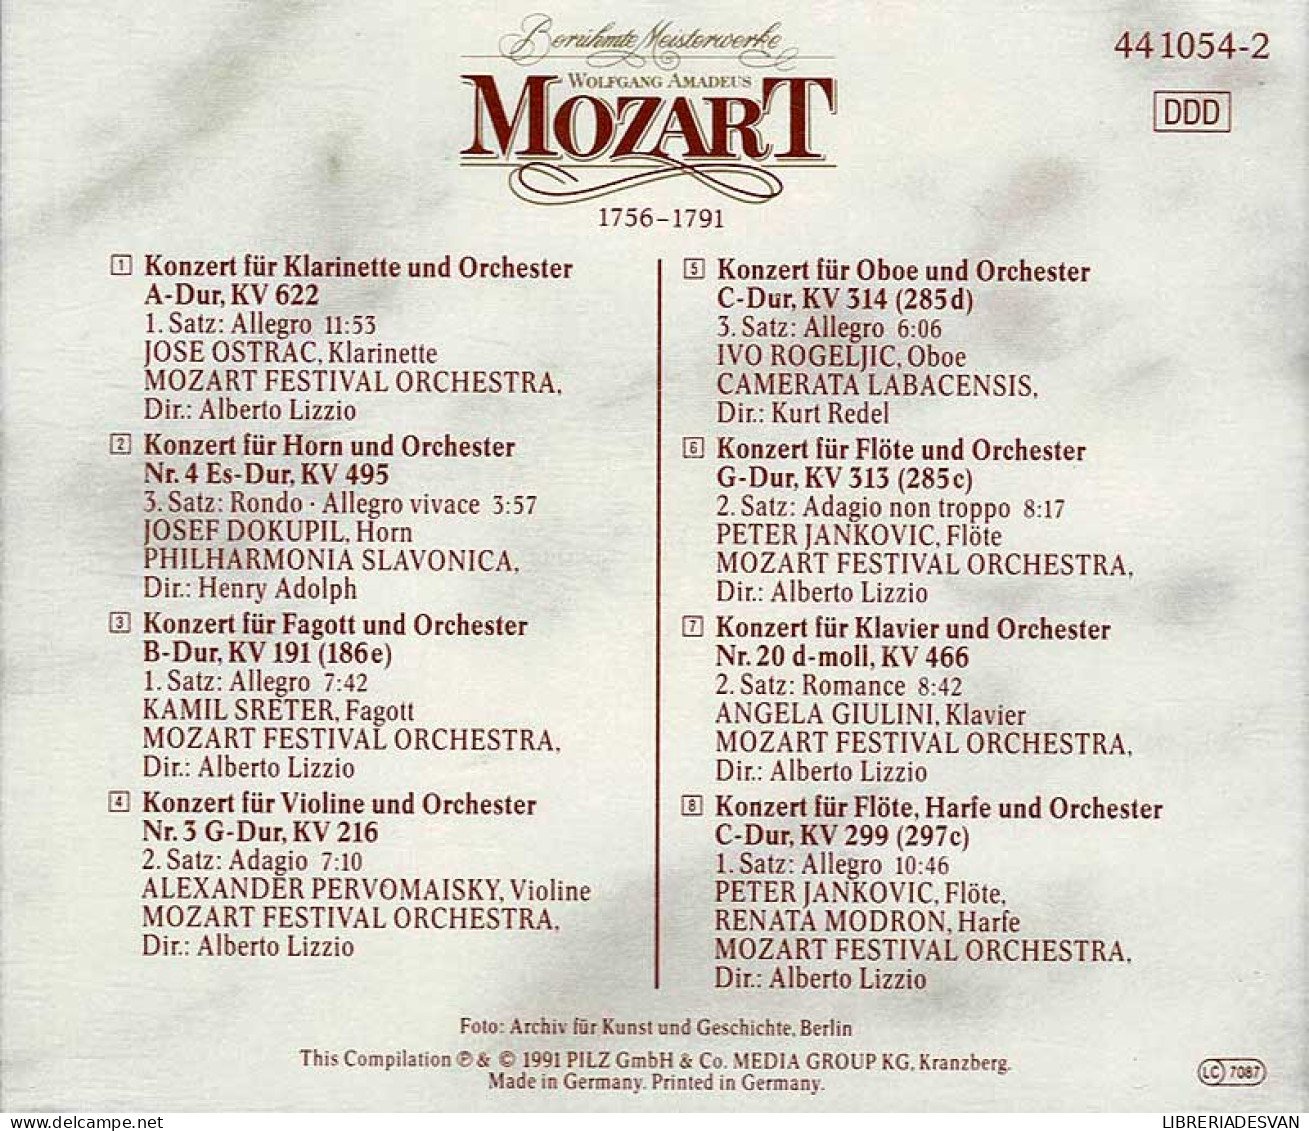 Wolfgang Amadeus Mozart - Beruhmte Meisterwerke Vol. 3. CD - Classica